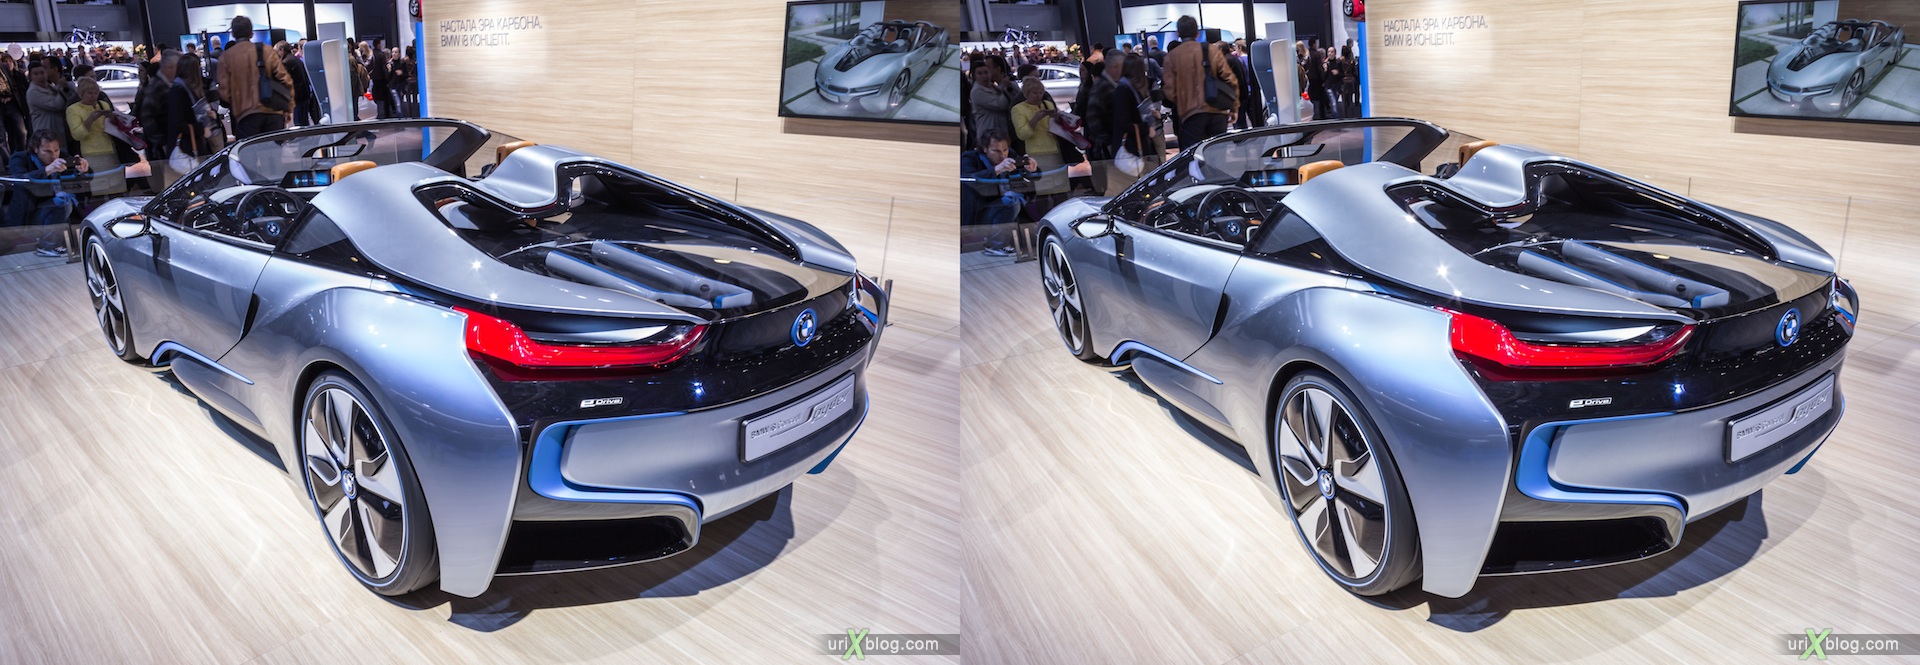 2012, BMW i8 Concept Spyder, Московский международный автомобильный салон, ММАС, Крокус Экспо, 3D, стерео, стереопара